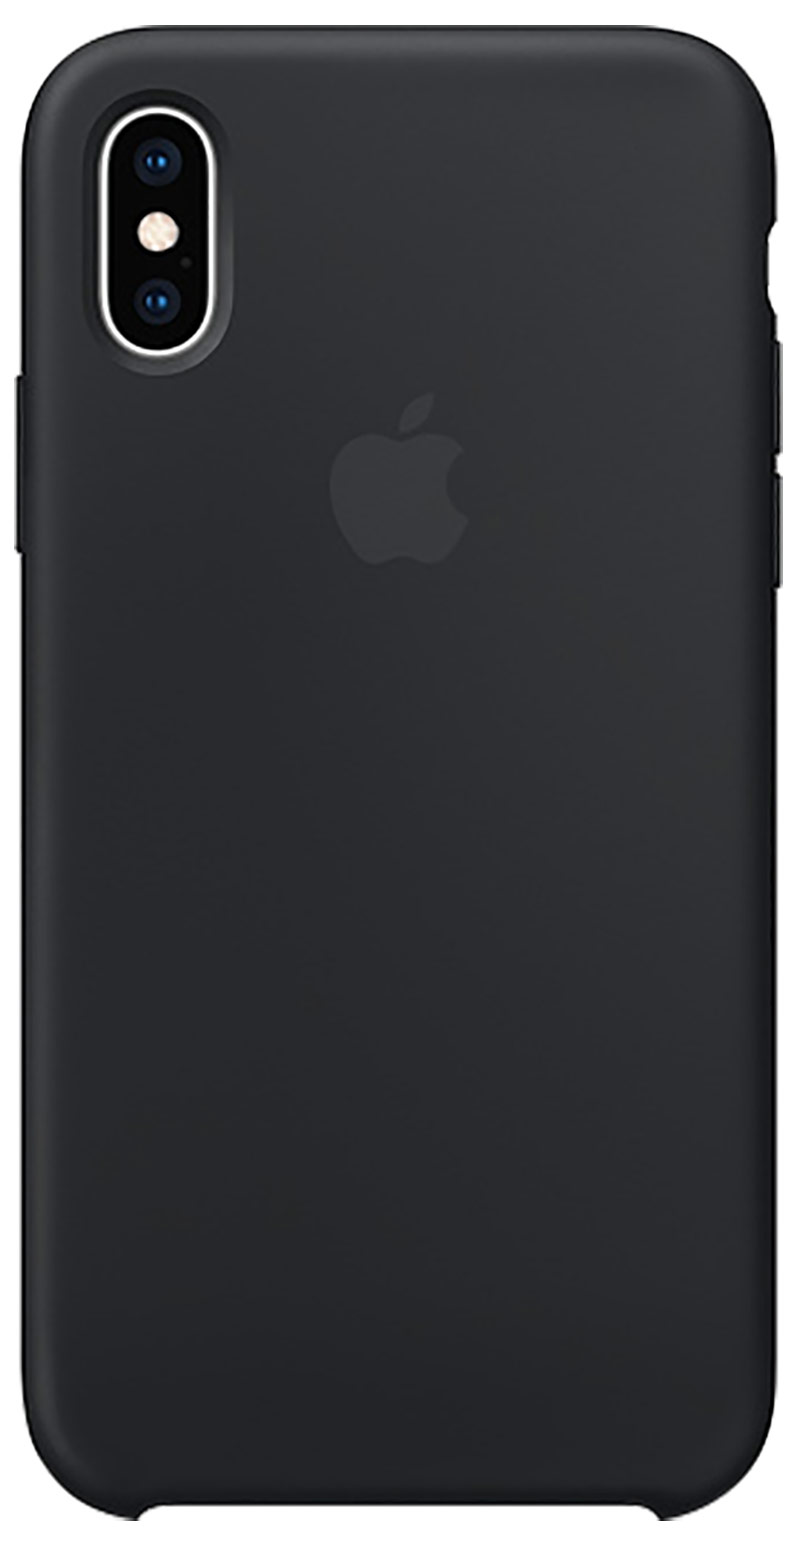 Coque en silicone pour iPhone Xs noir